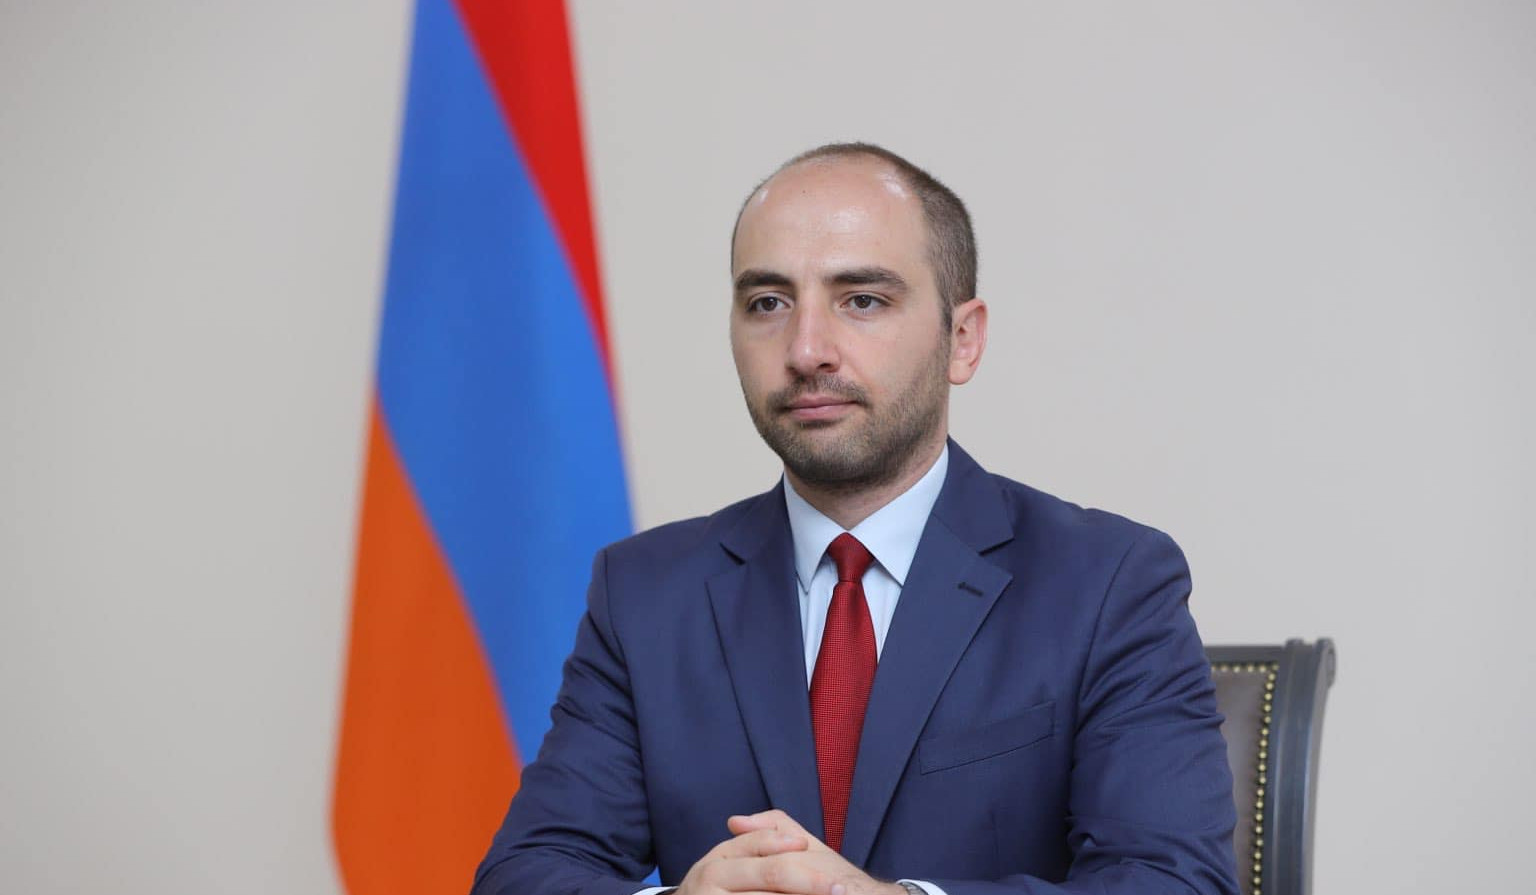 Այս պահին Հայաստանի և Թուրքիայի հատուկ ներկայացուցիչների հանդիպման վերաբերյալ որևէ պայմանավորվածություն չկա. Վահան Հունանյան